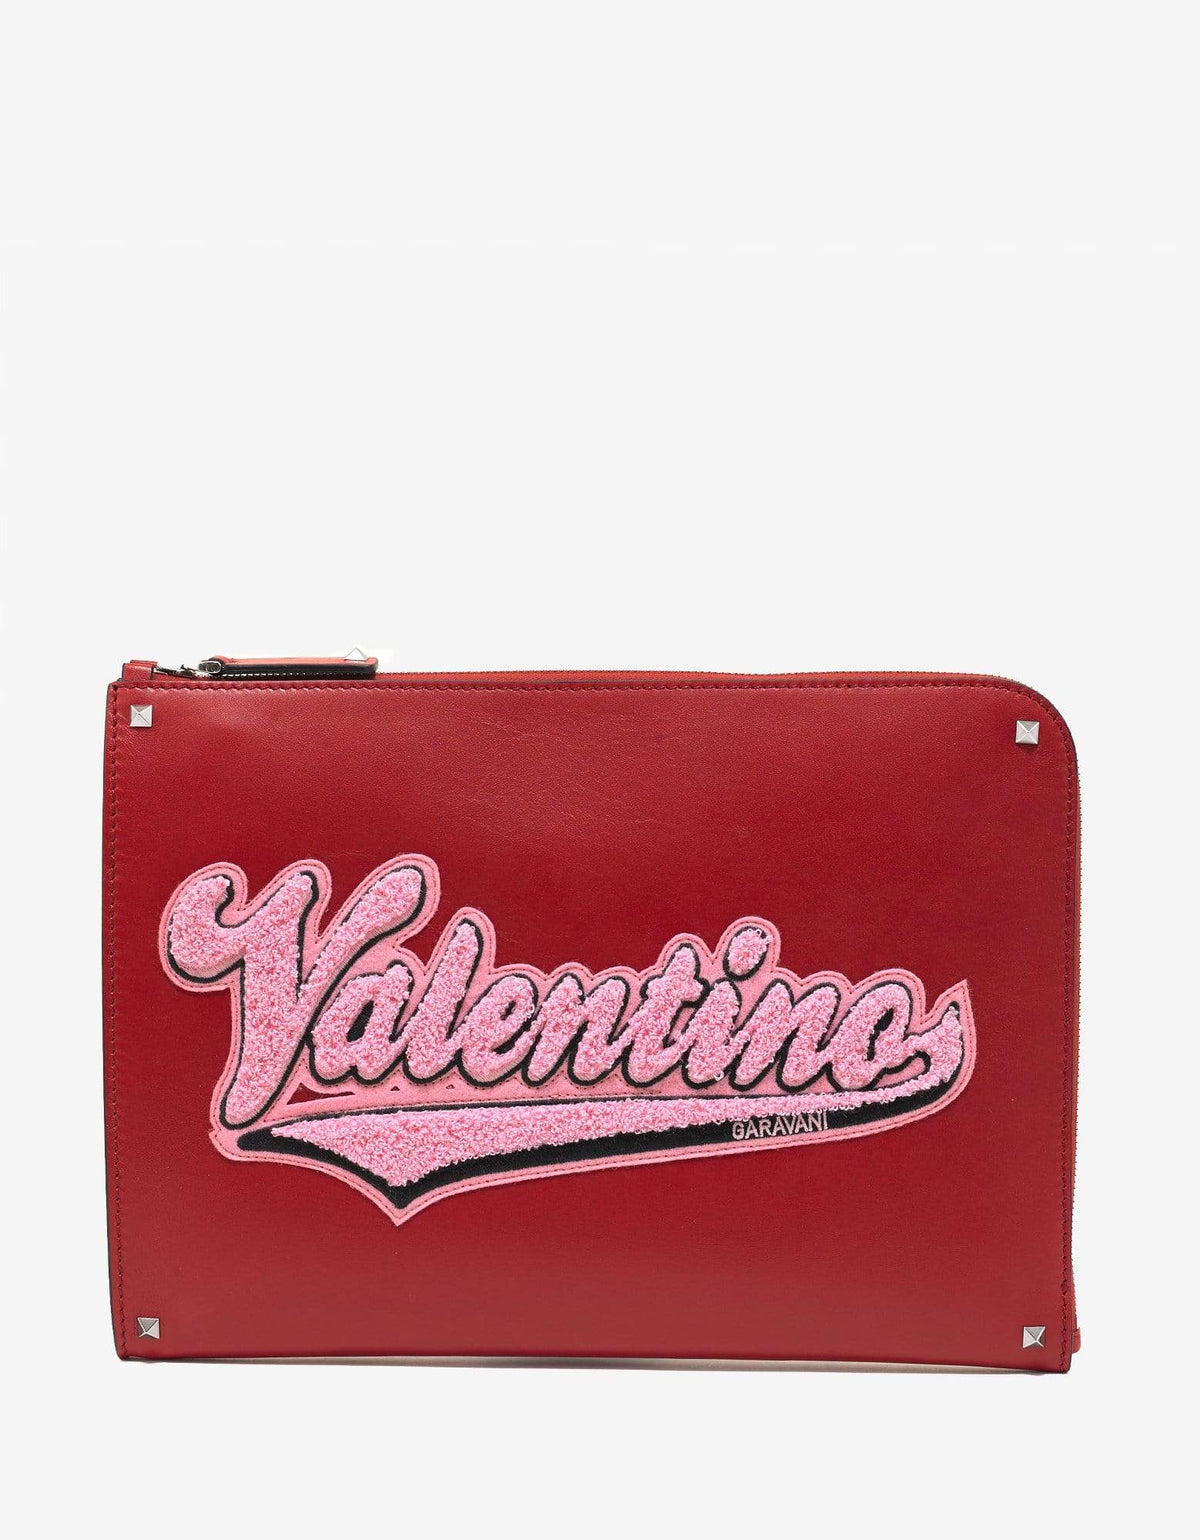 Valentino Garavani Red Leather Varsity Logo Document Holder